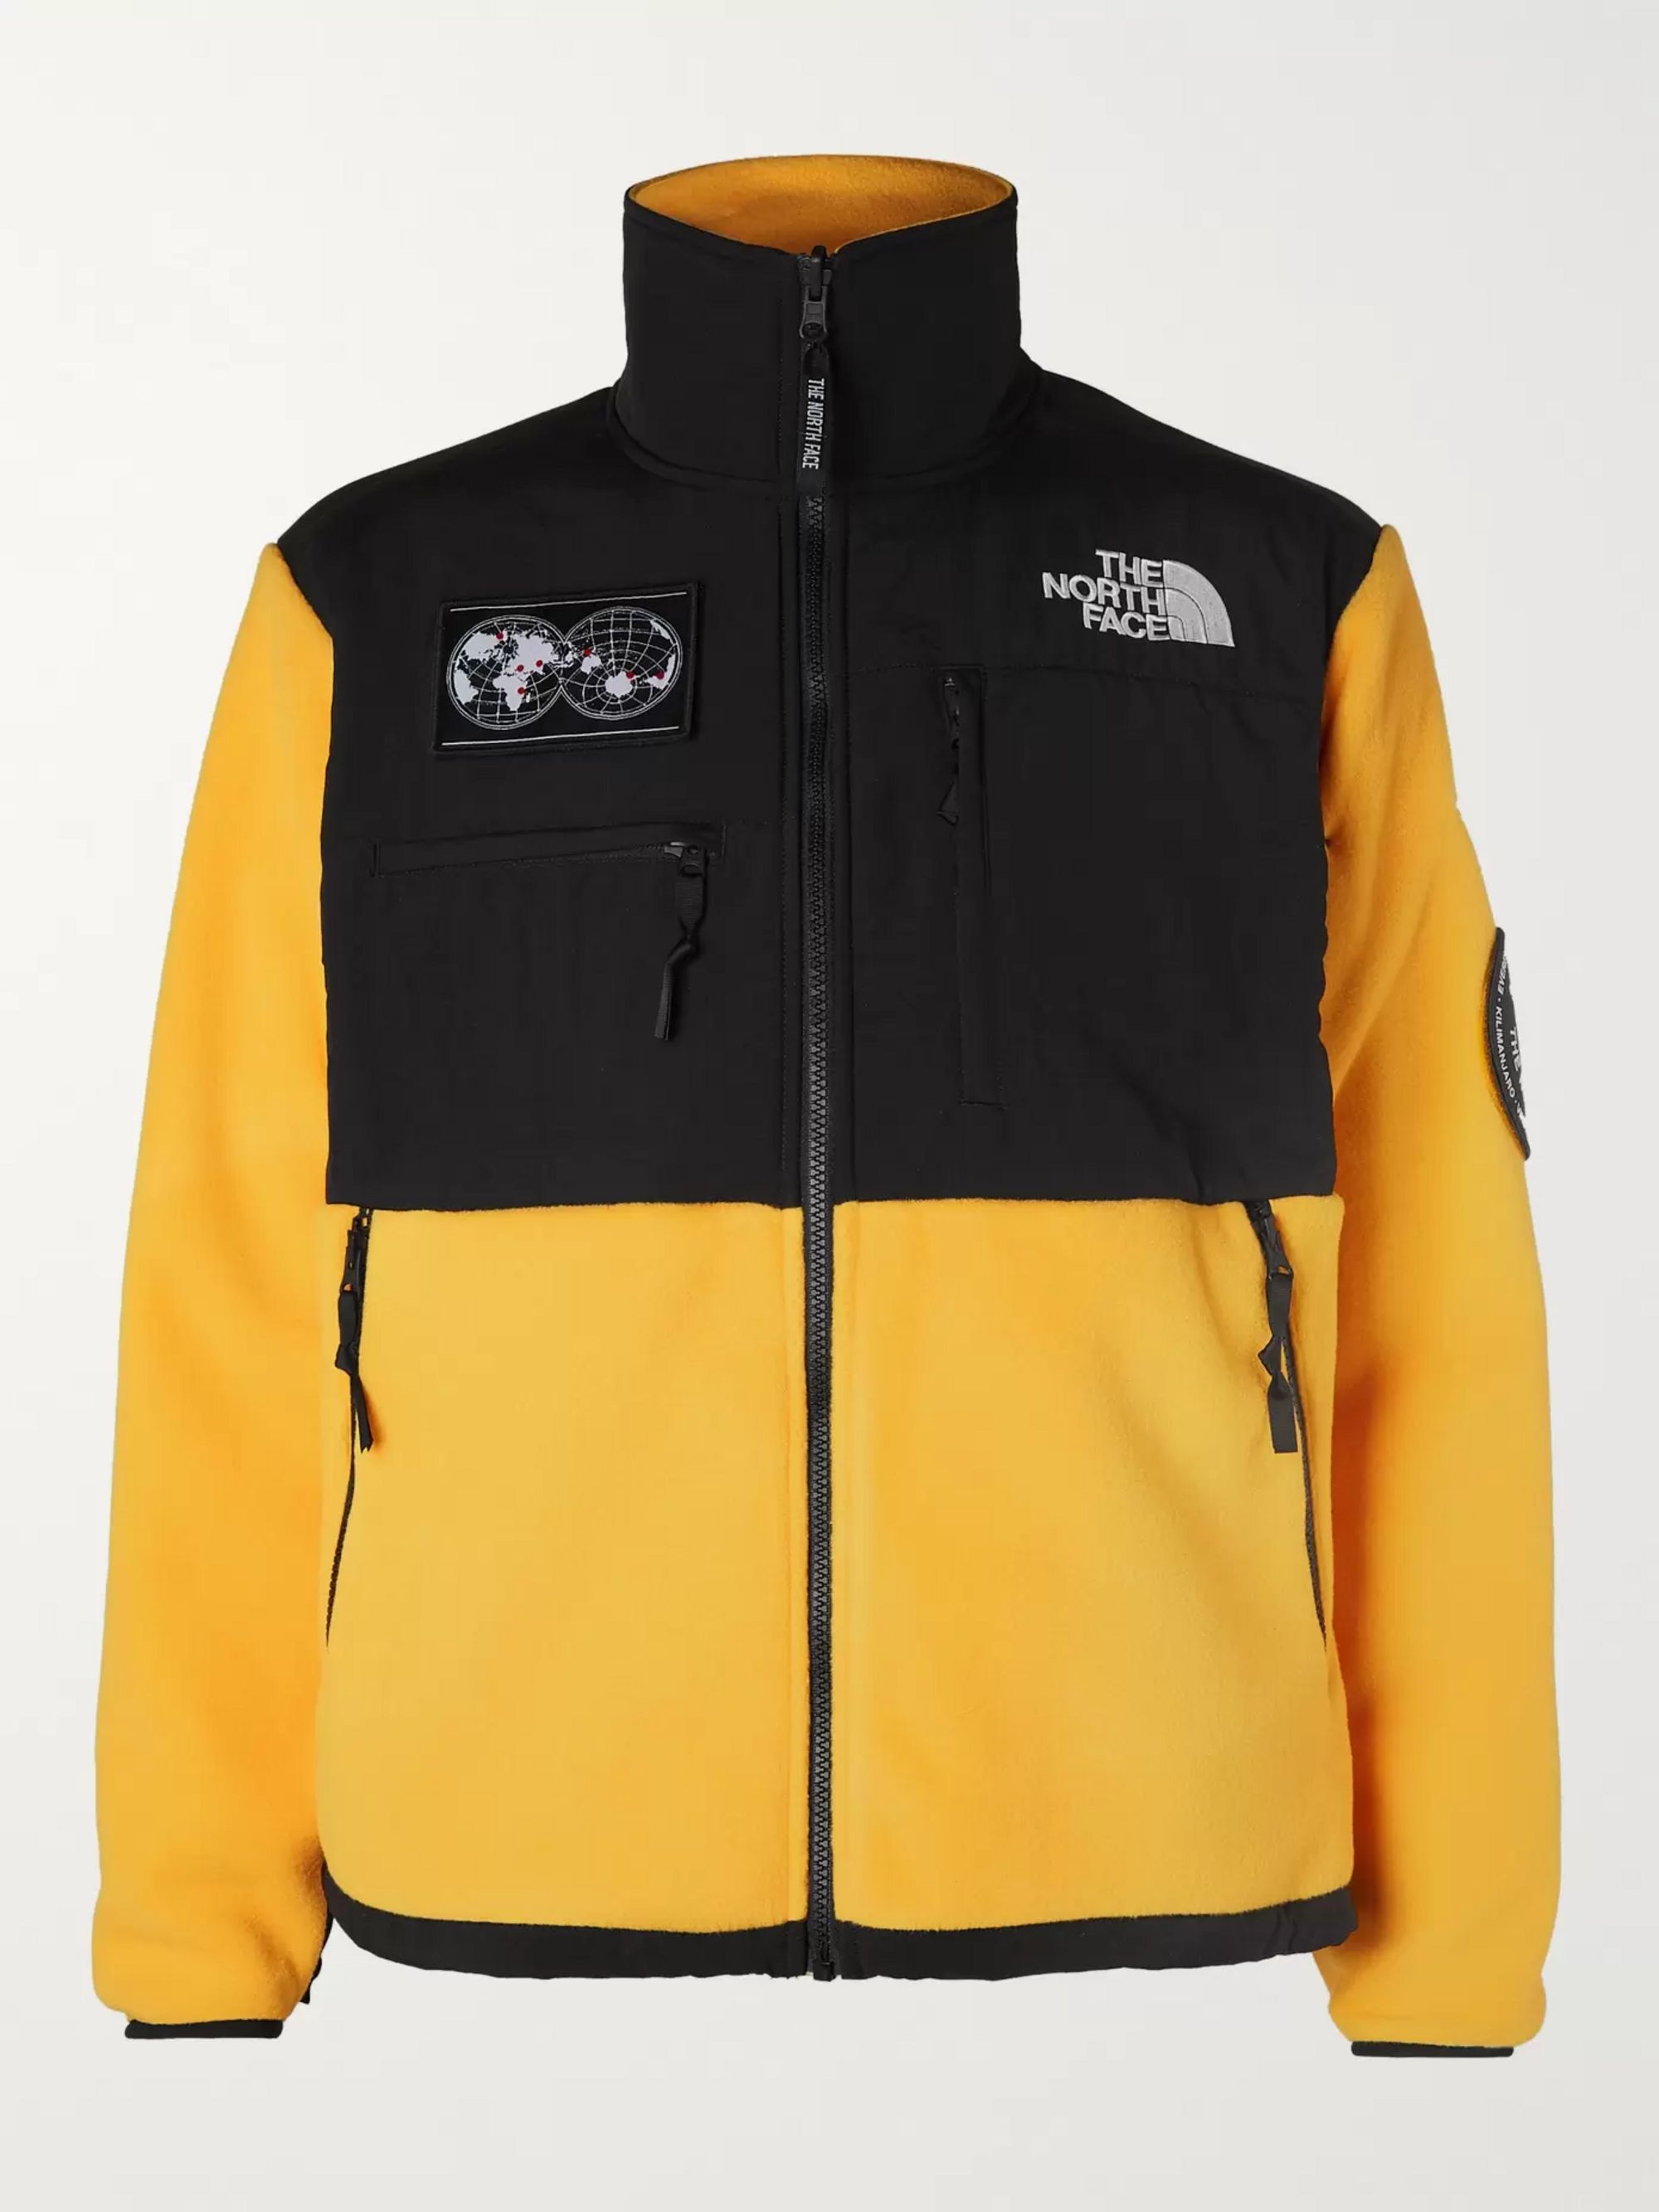 north face summit series fleece jacket